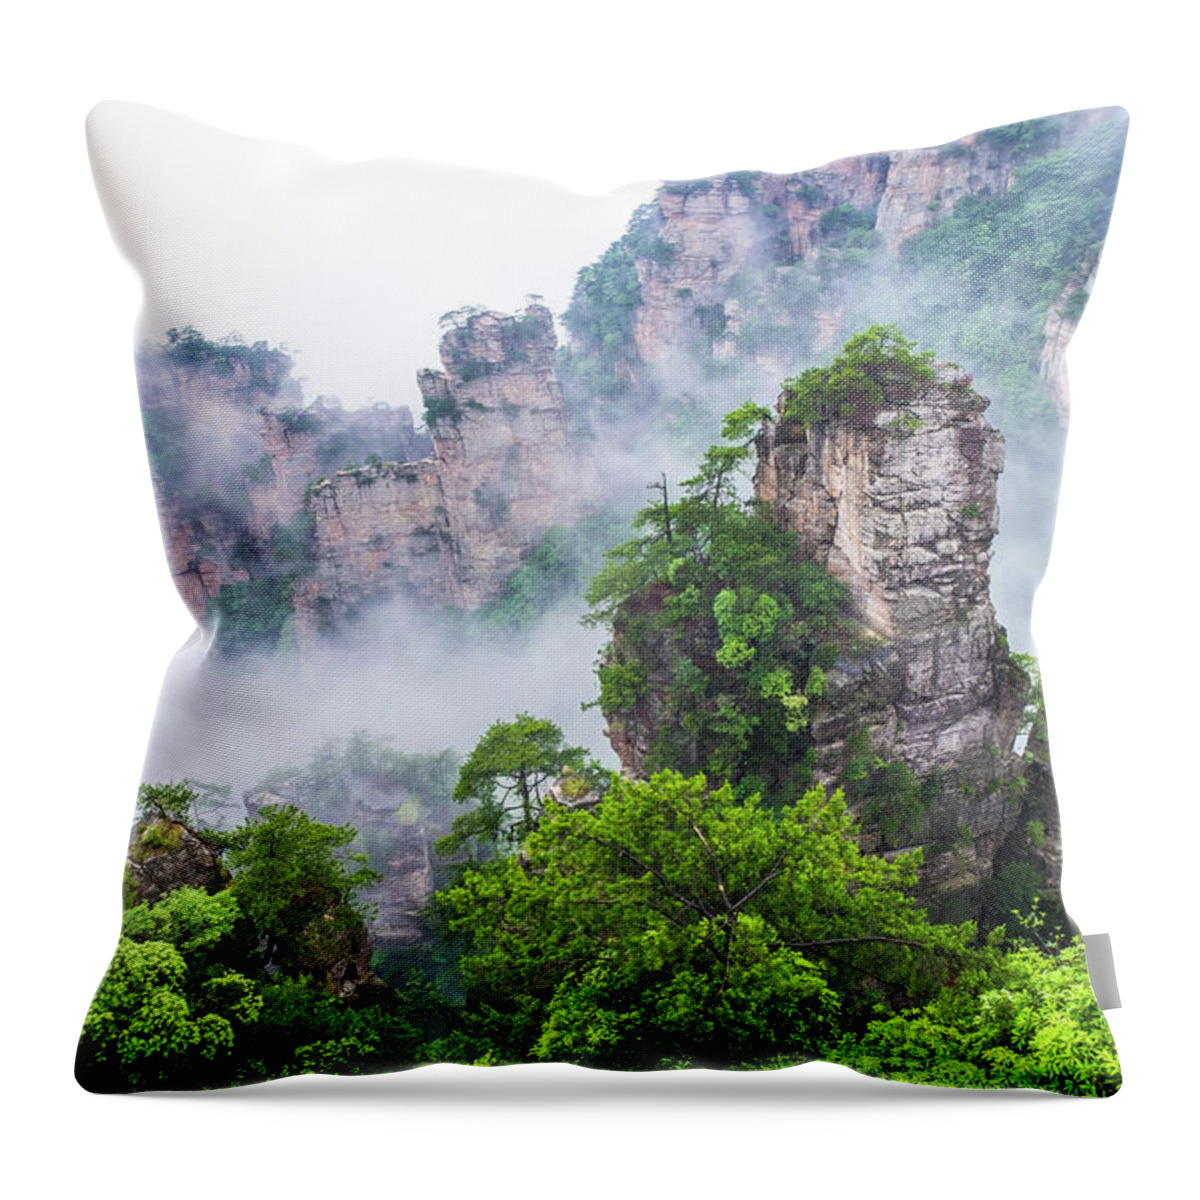 Changsa Throw Pillow featuring the photograph Zhangjiajie Tianzi Mountain Nature Reserve by Arj Munoz